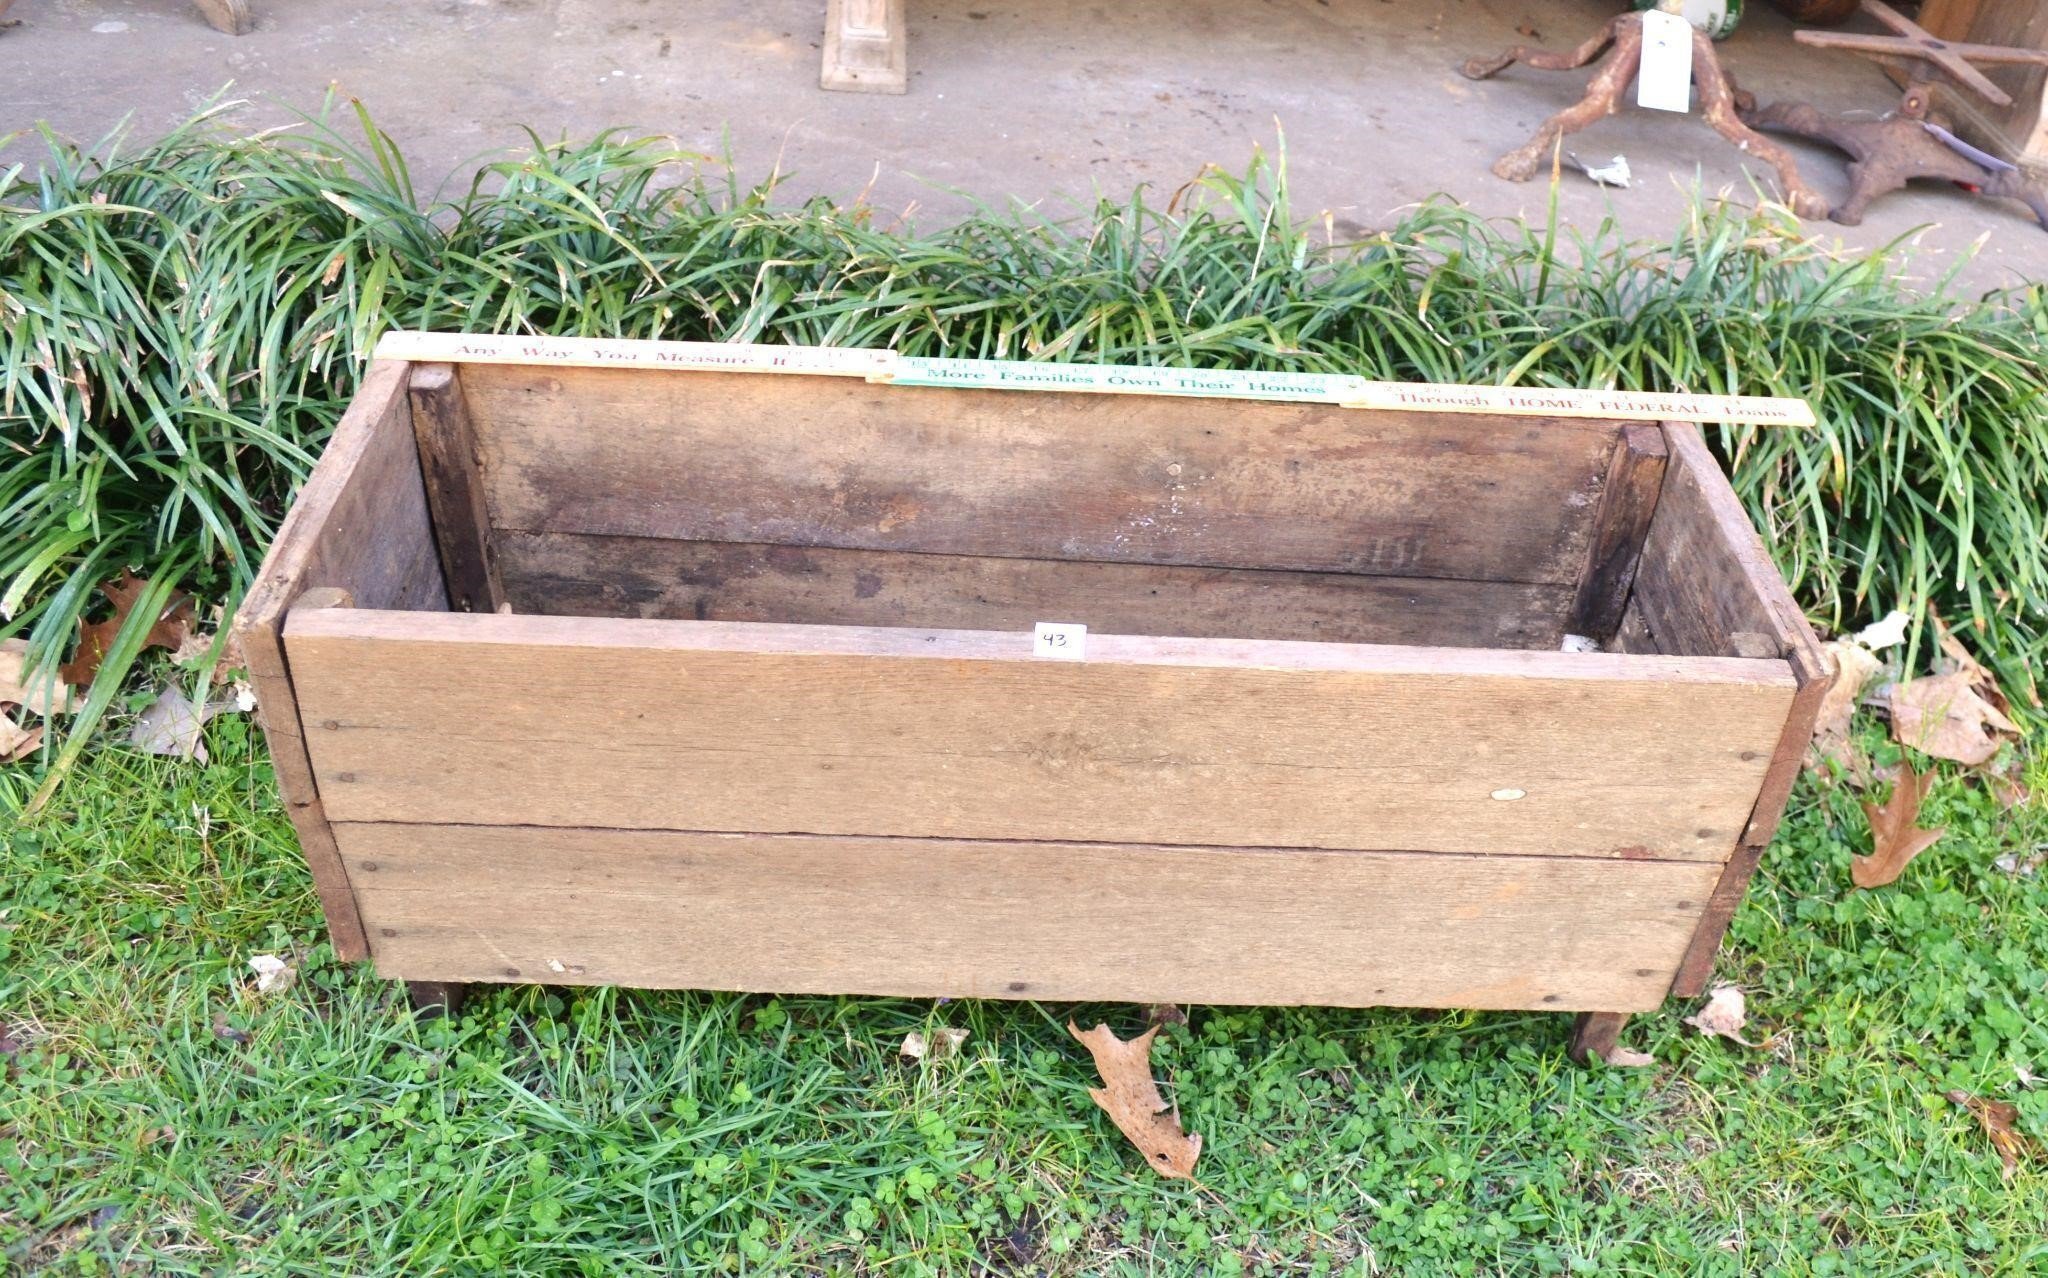 Antique Wooden Planter Box